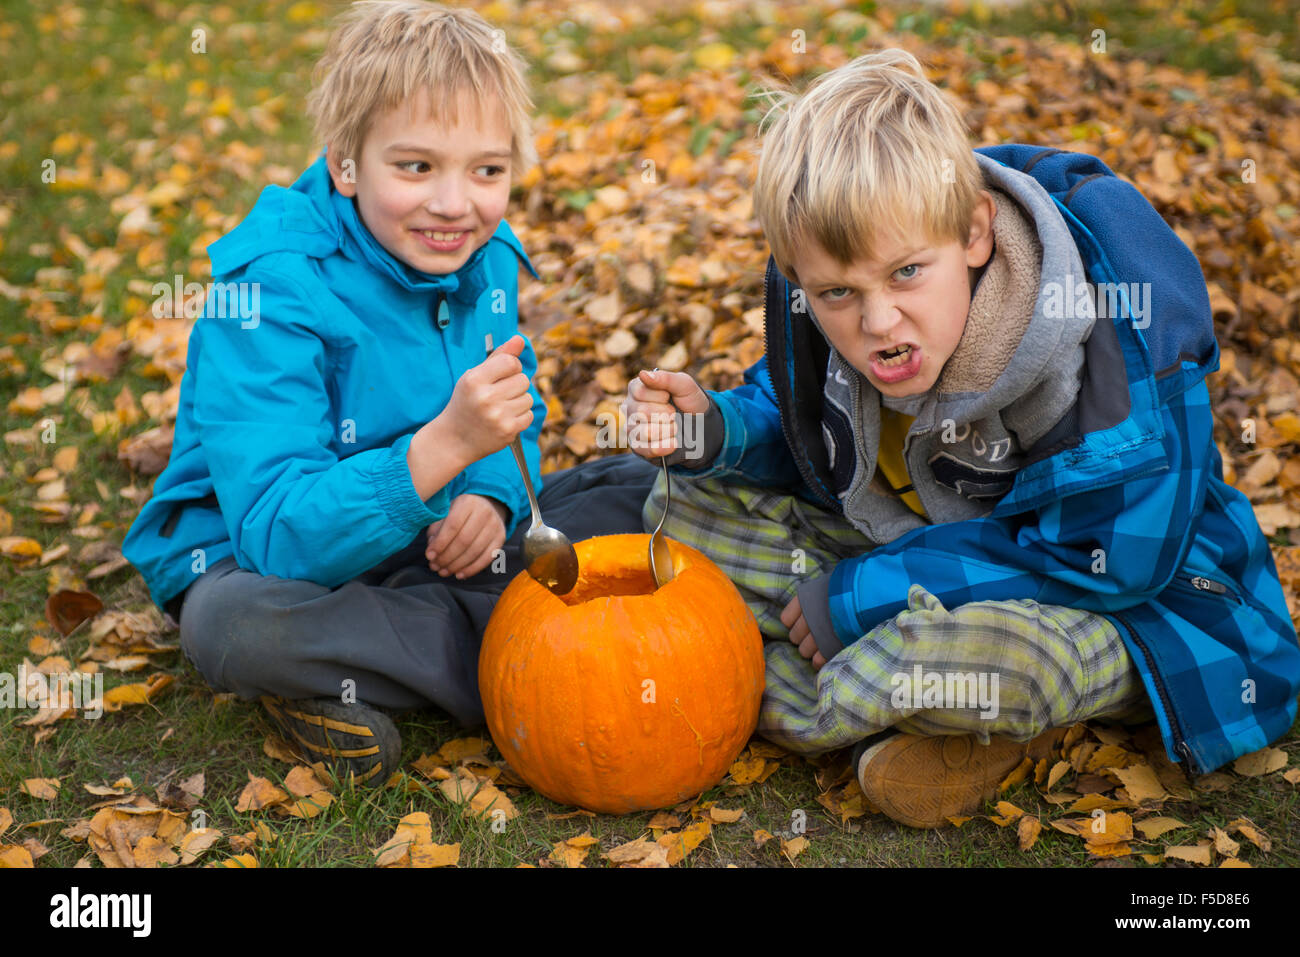 Les enfants de mêmes parents de garçons blonds hollowing out halloween citrouille à l'extérieur dans le jardin, assis sur la pelouse d'herbe d'automne, Banque D'Images